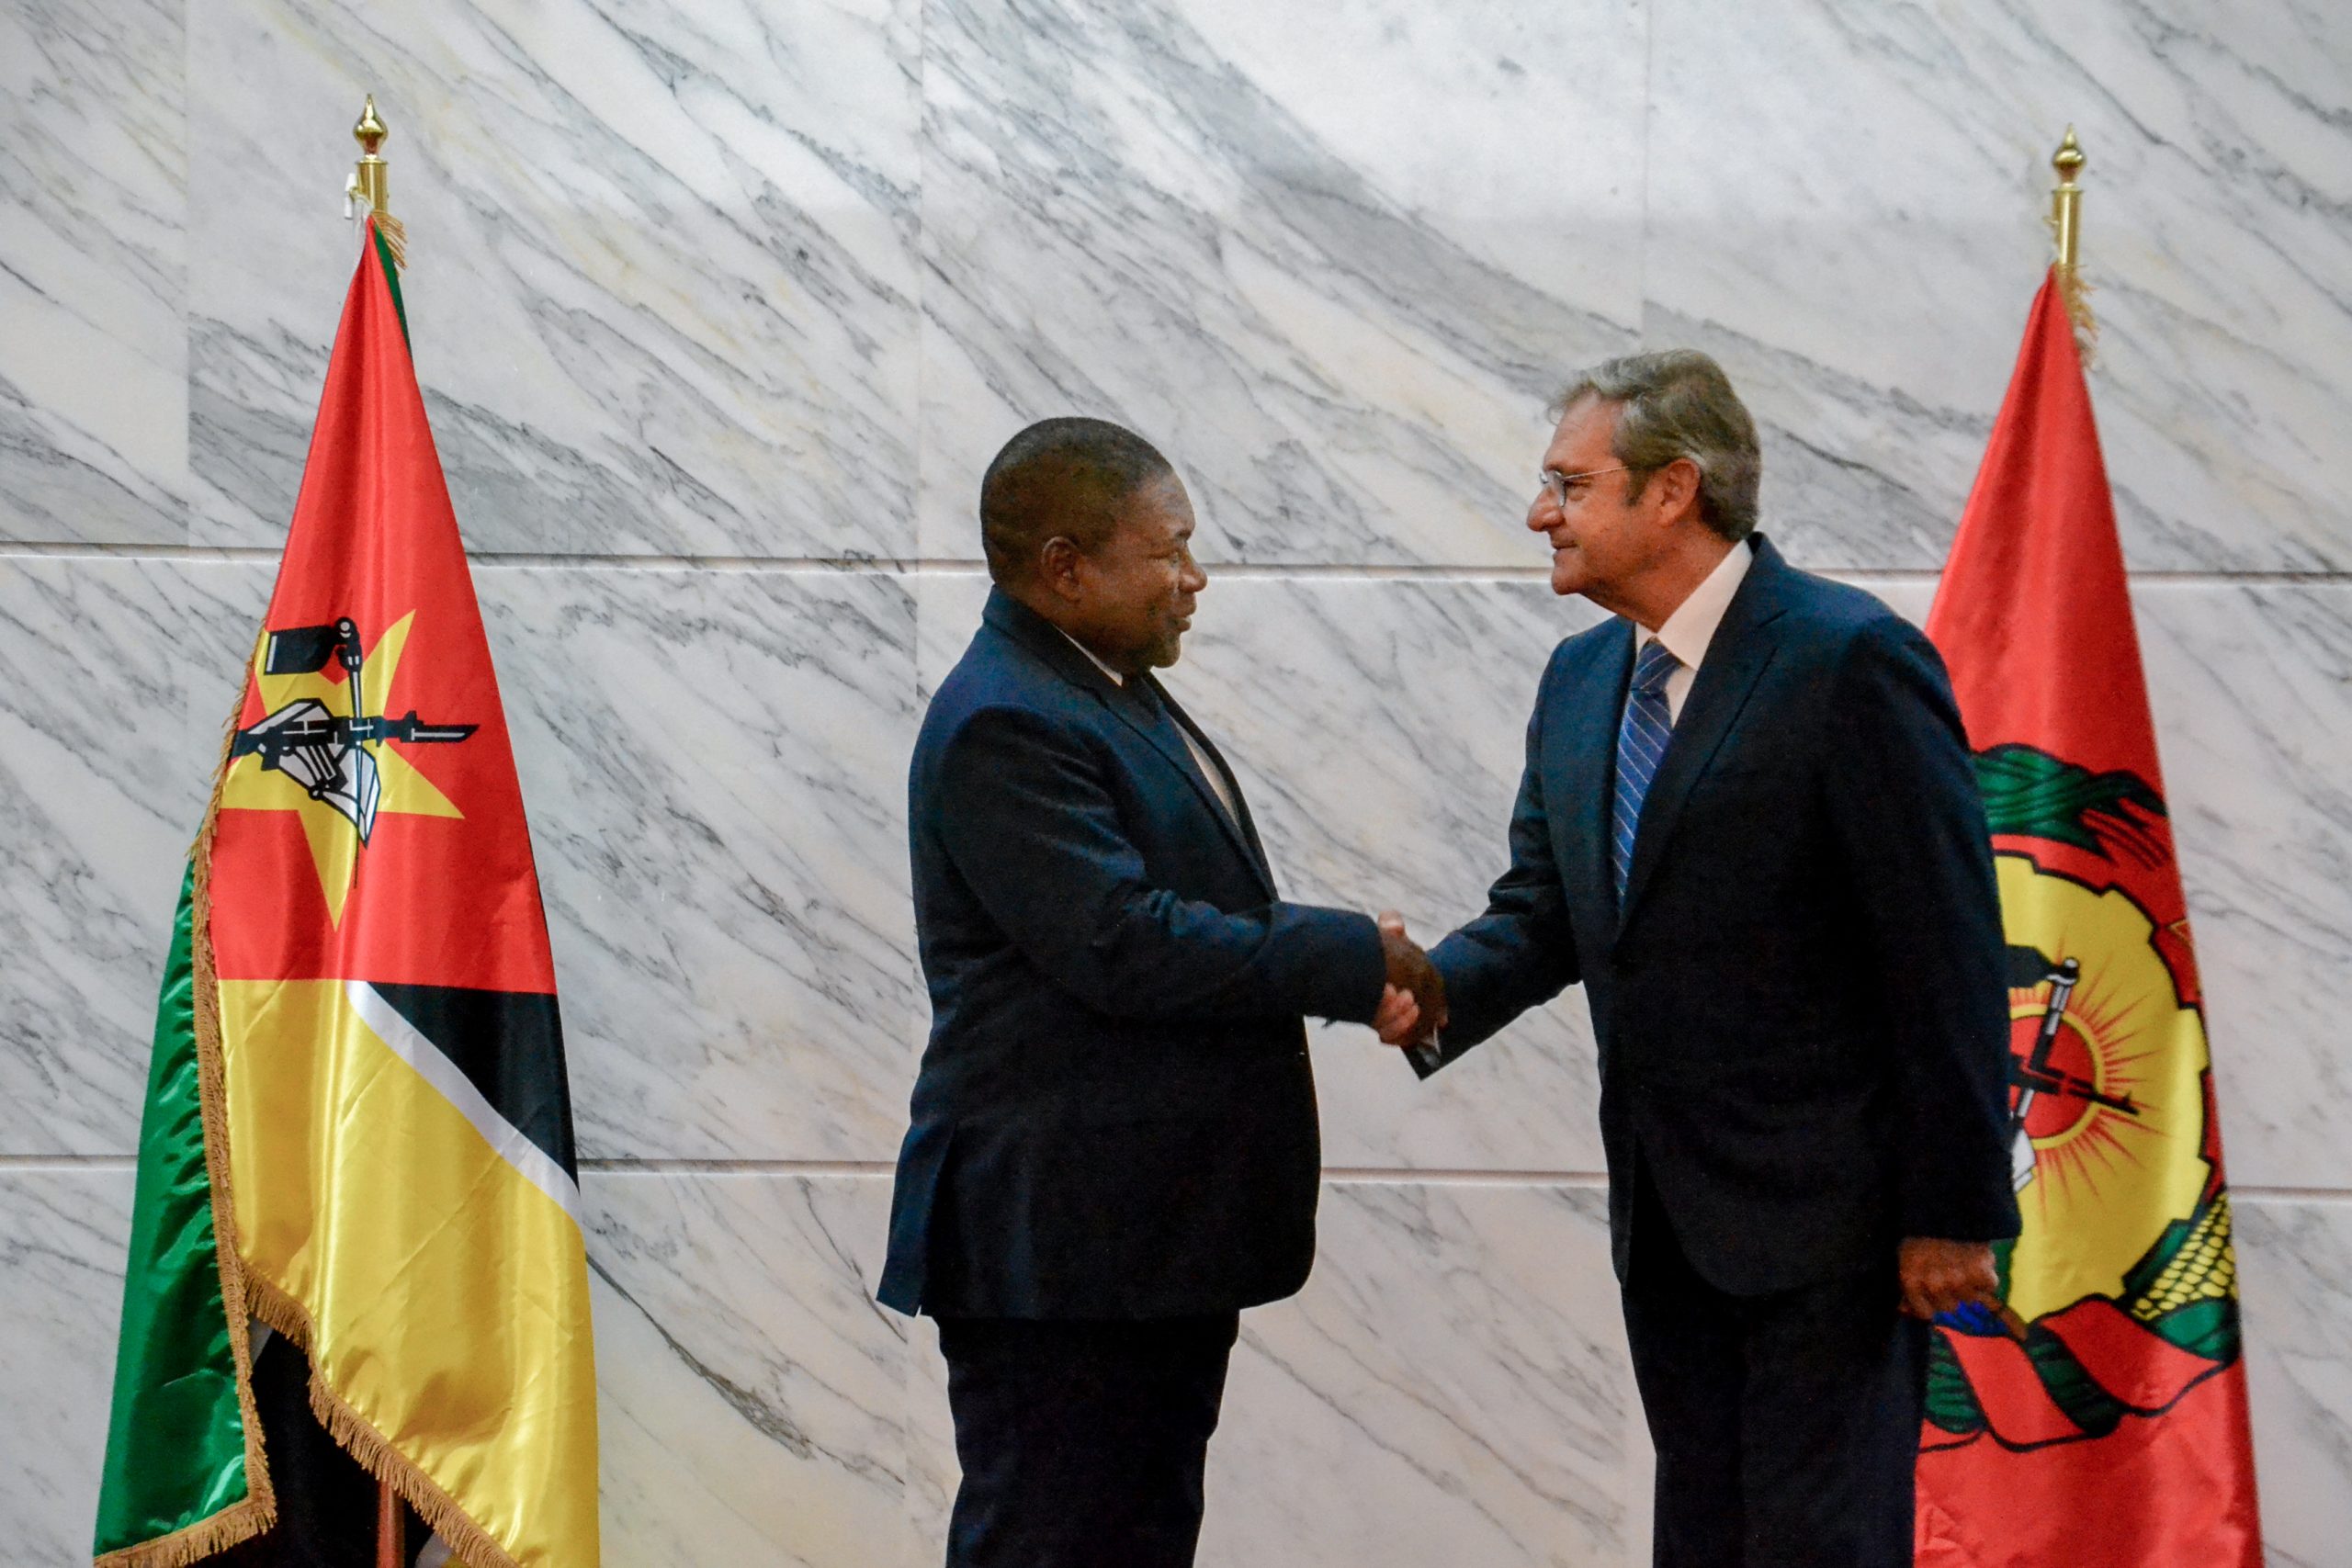 El nuevo embajador de la Orden de Malta ha presentado sus credenciales ante el presidente de la República de Mozambique